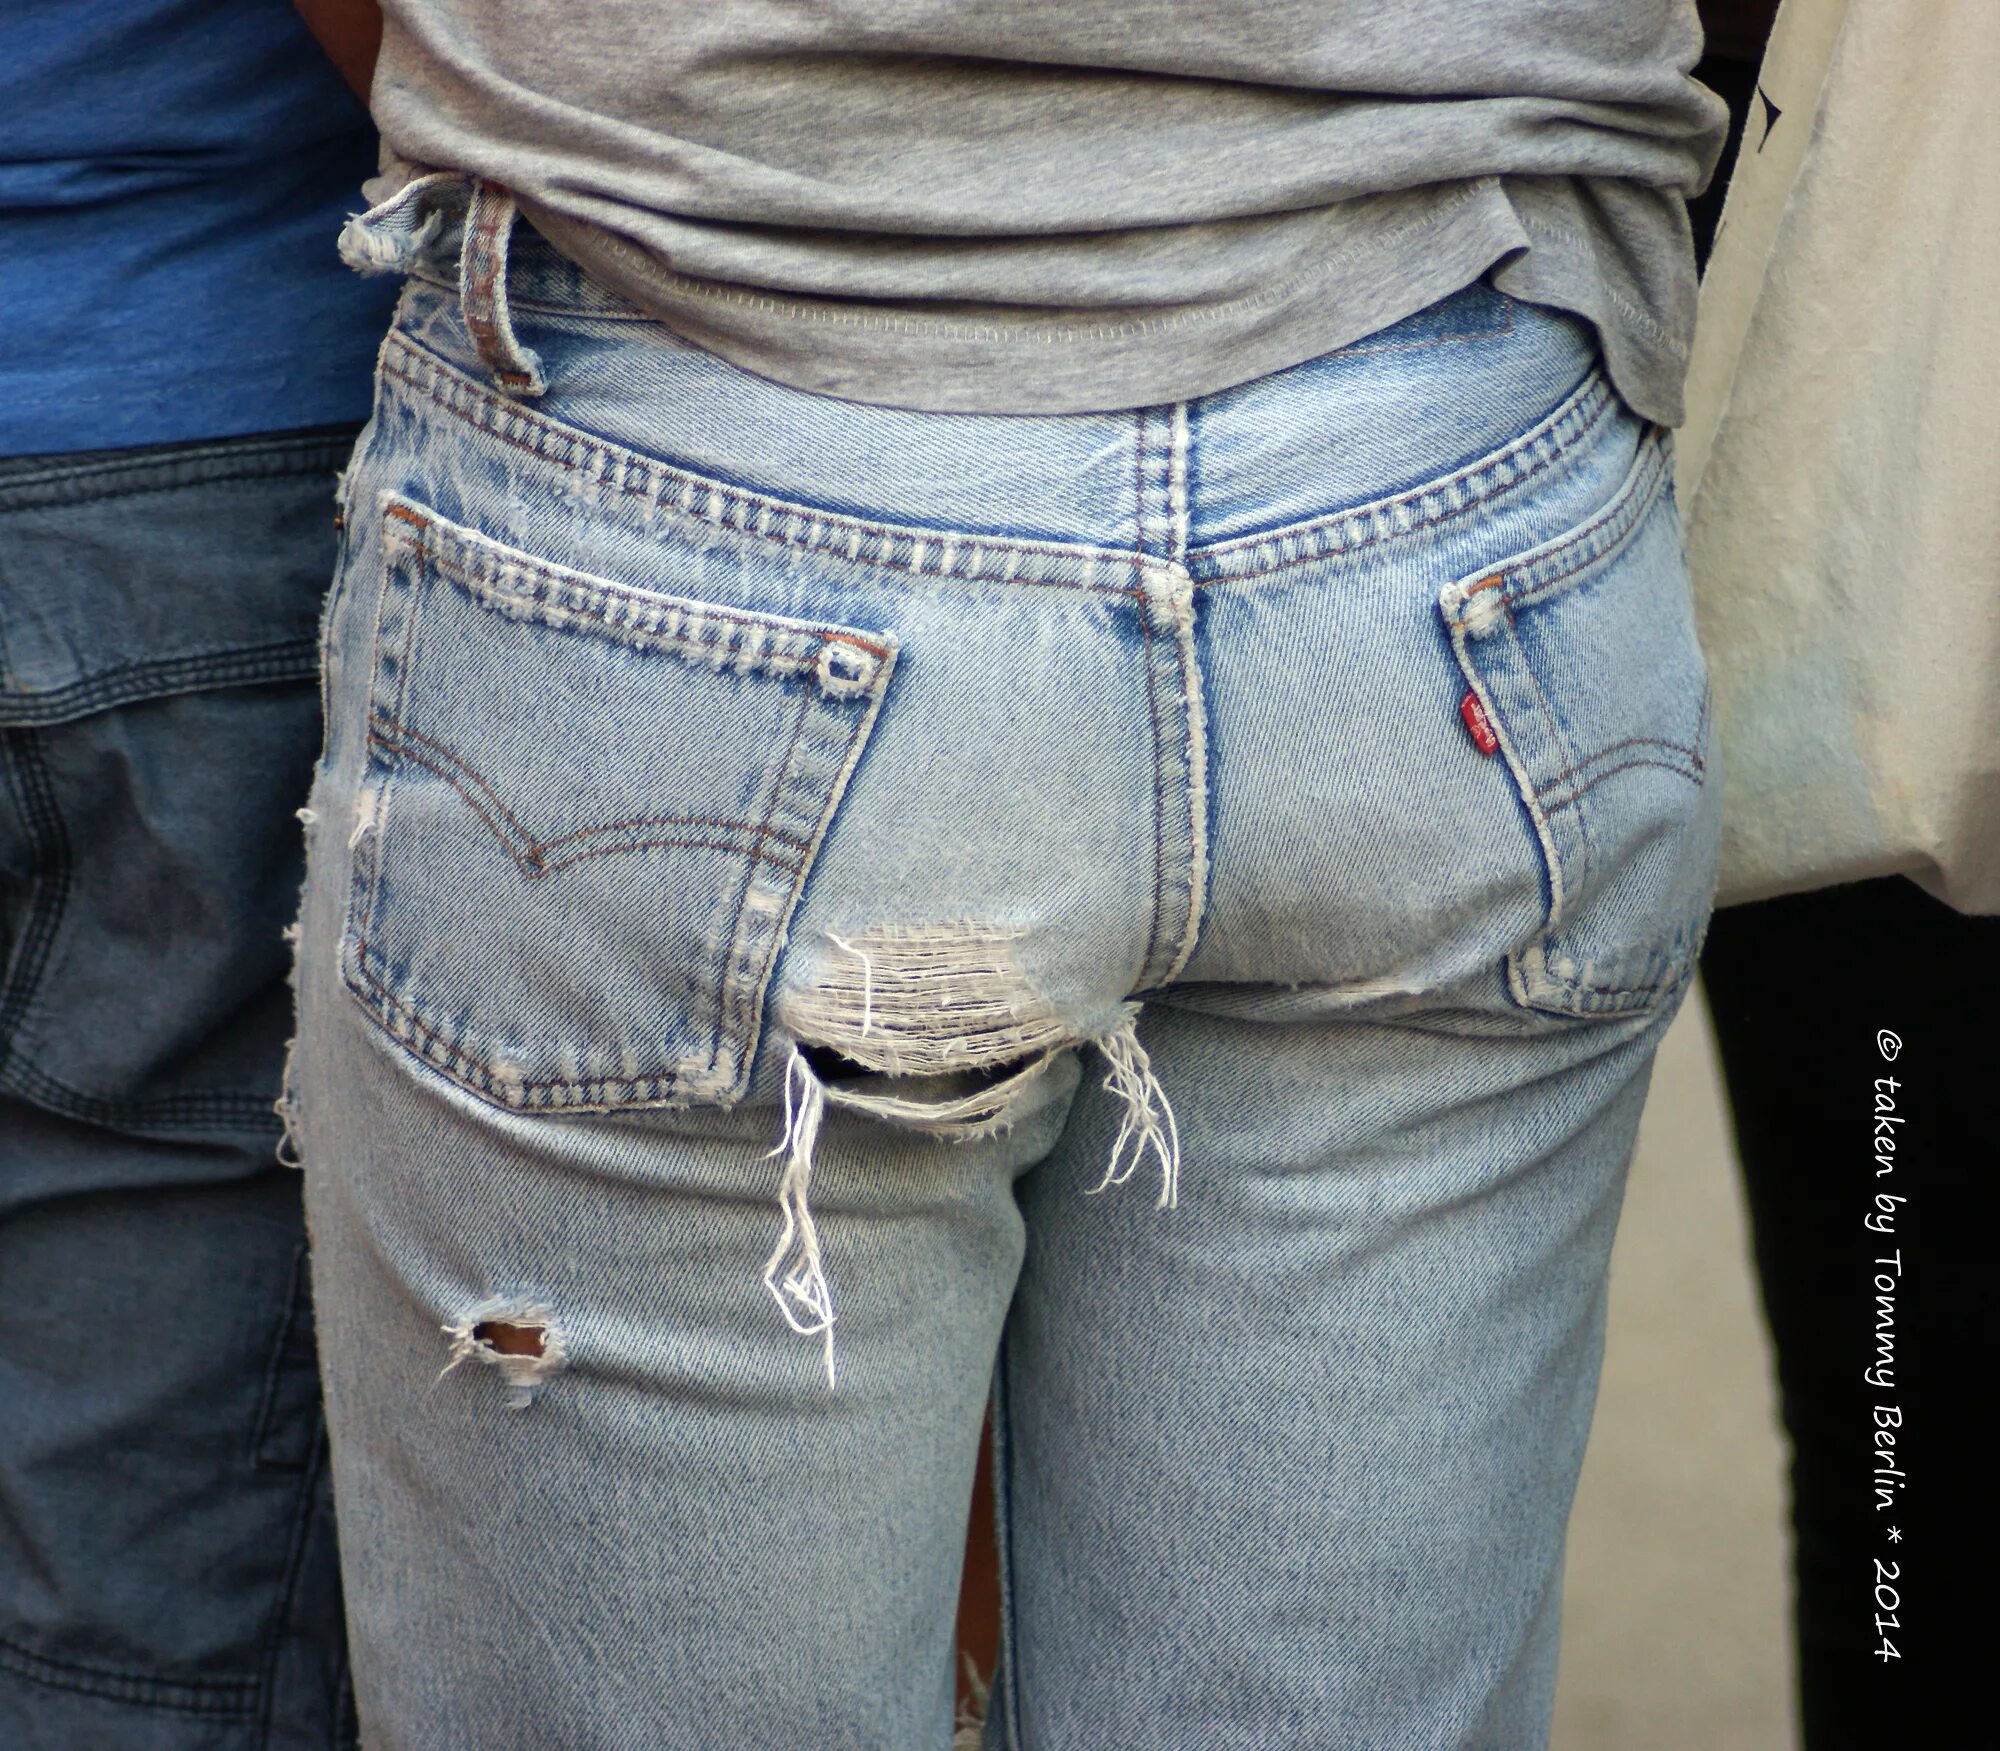 Выпуклость в джинсах. Джинсы с имитацией резинки от трусов. Гомики в джинсах левайс.